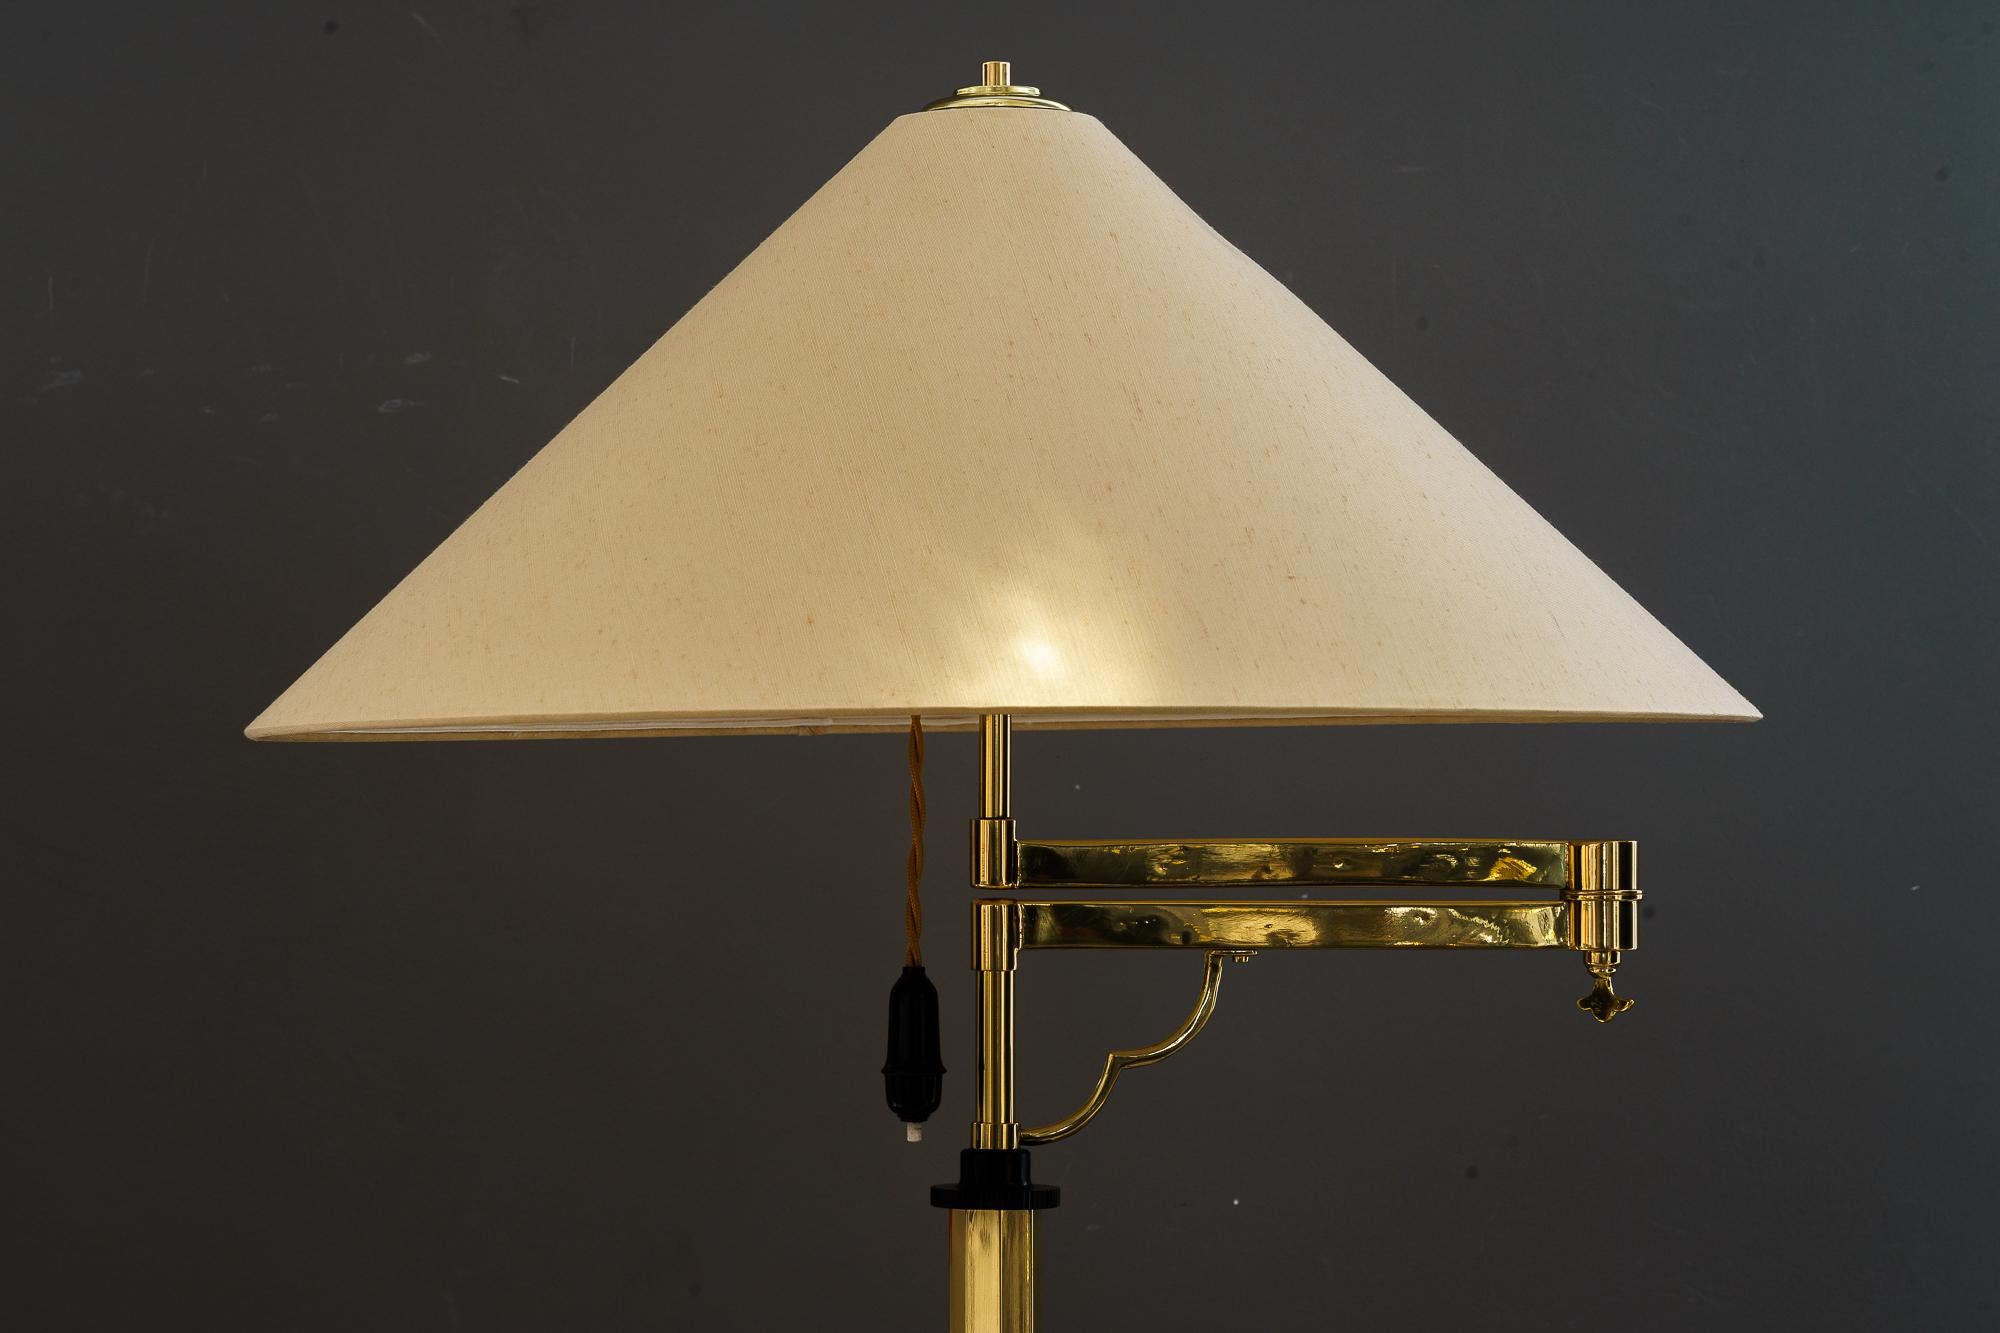 Verstellbare und schwenkbare Art-Déco-Stehlampe mit Stoffschirm Vienna 1920er Jahre
Messing poliert und emailliert
Der Farbton wird ersetzt ( neu )